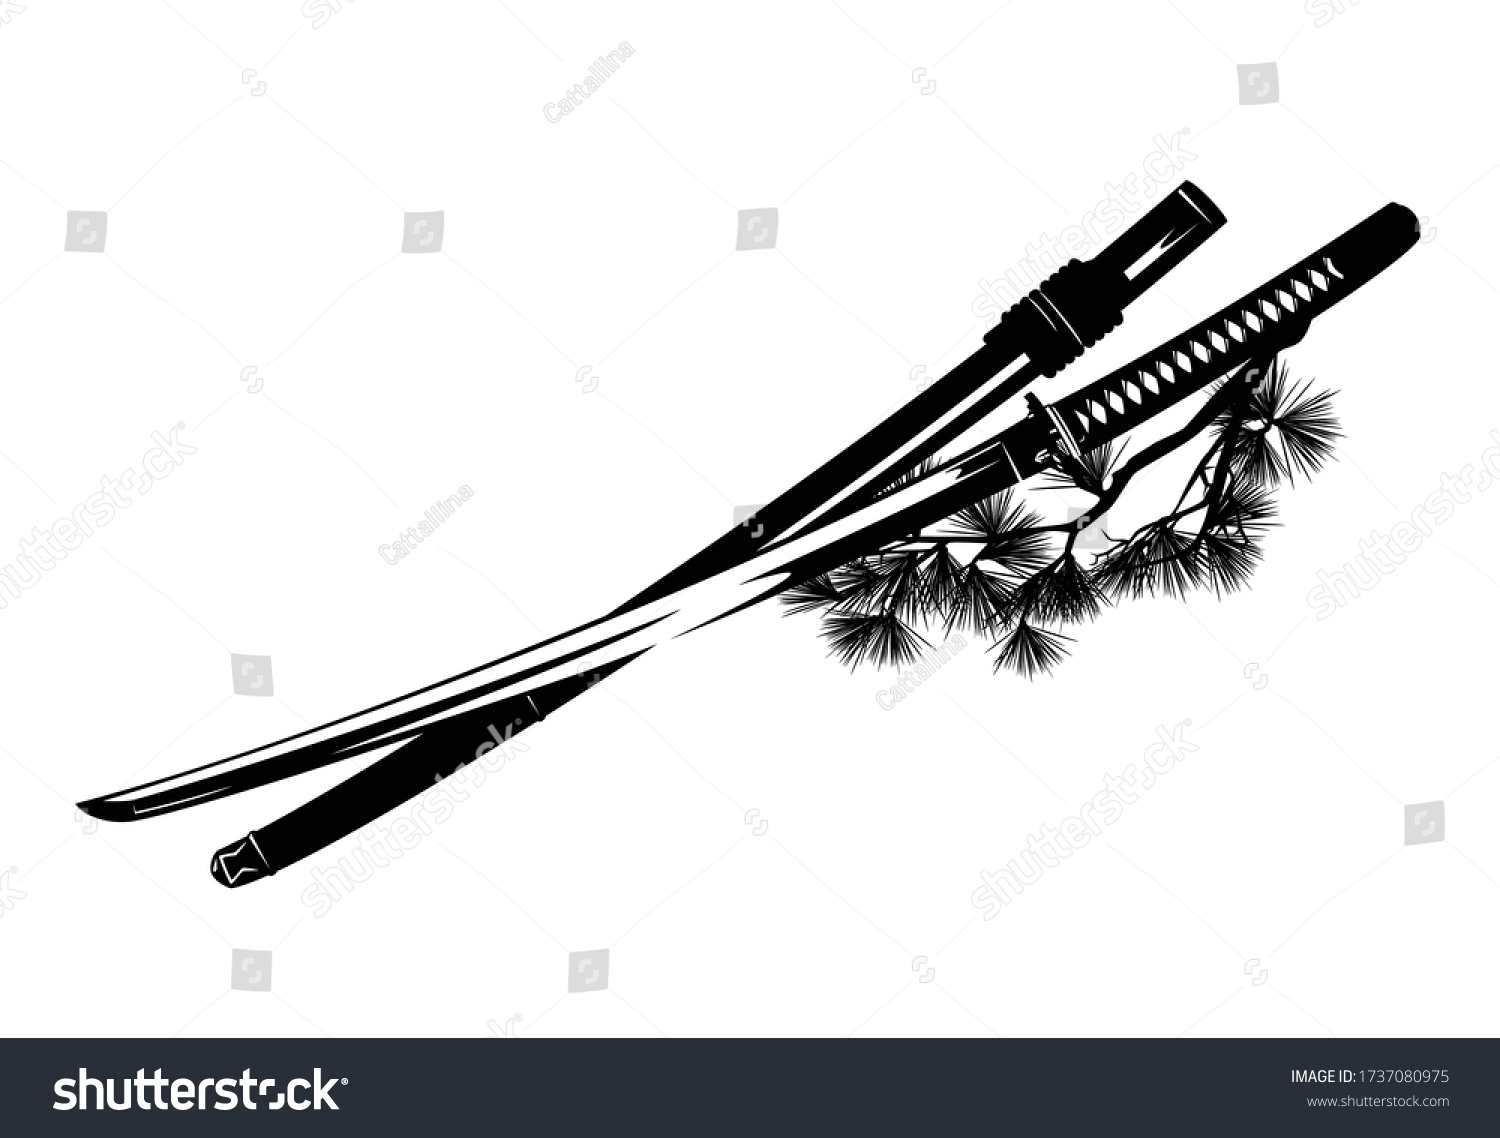 Самурайский меч вектор